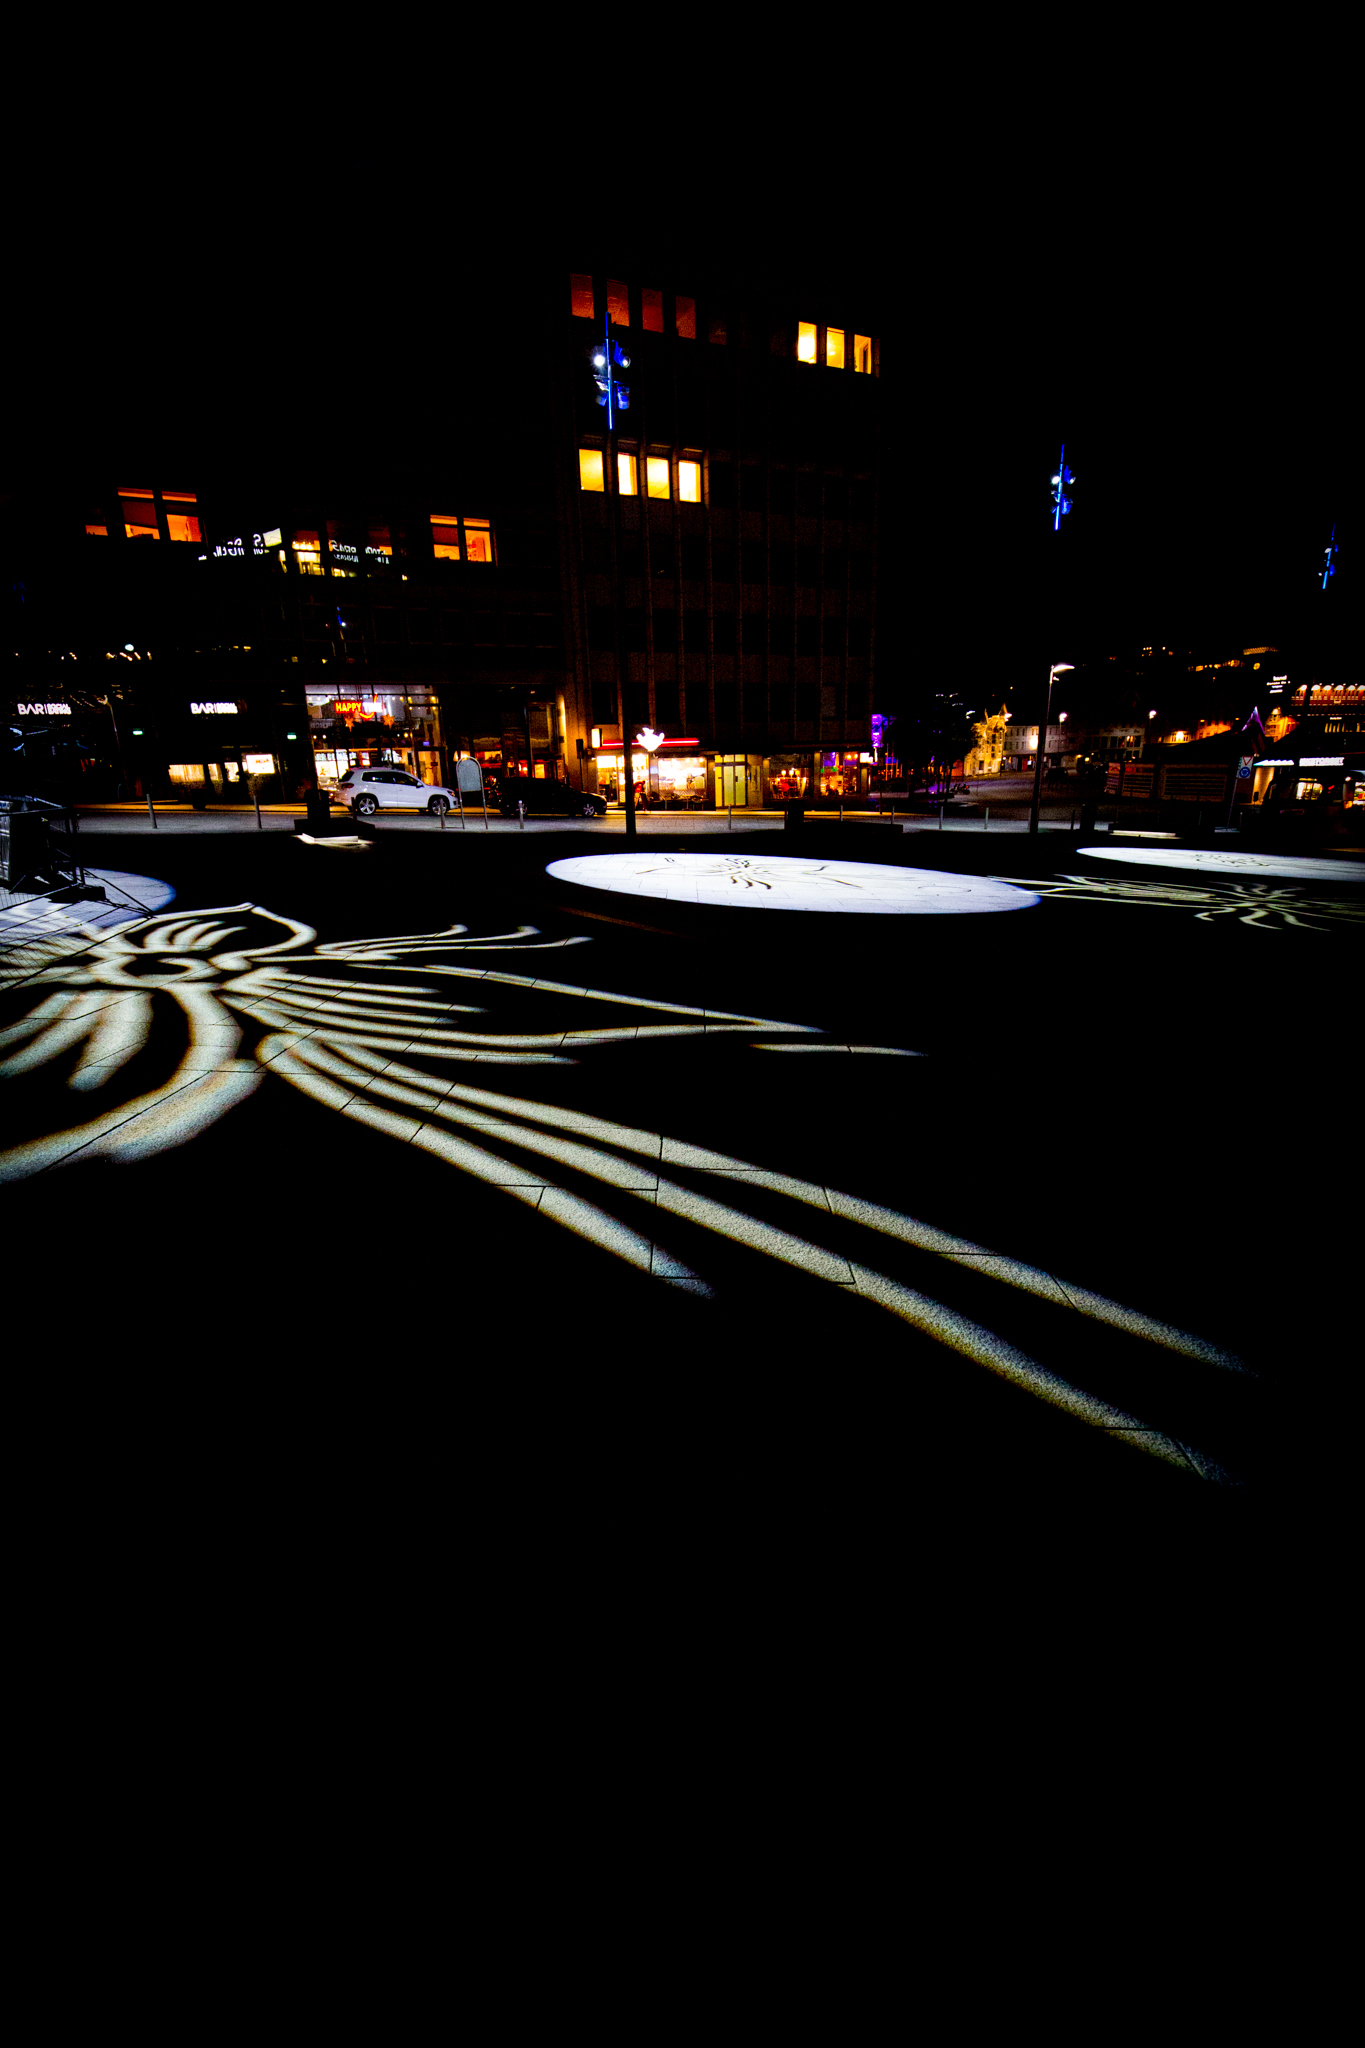 Veggbilder | Natt i Stavanger #1 | Night in Stavanger #1 | fotokunst kunstfoto foto kunst bilder aluminiumsplate wall art